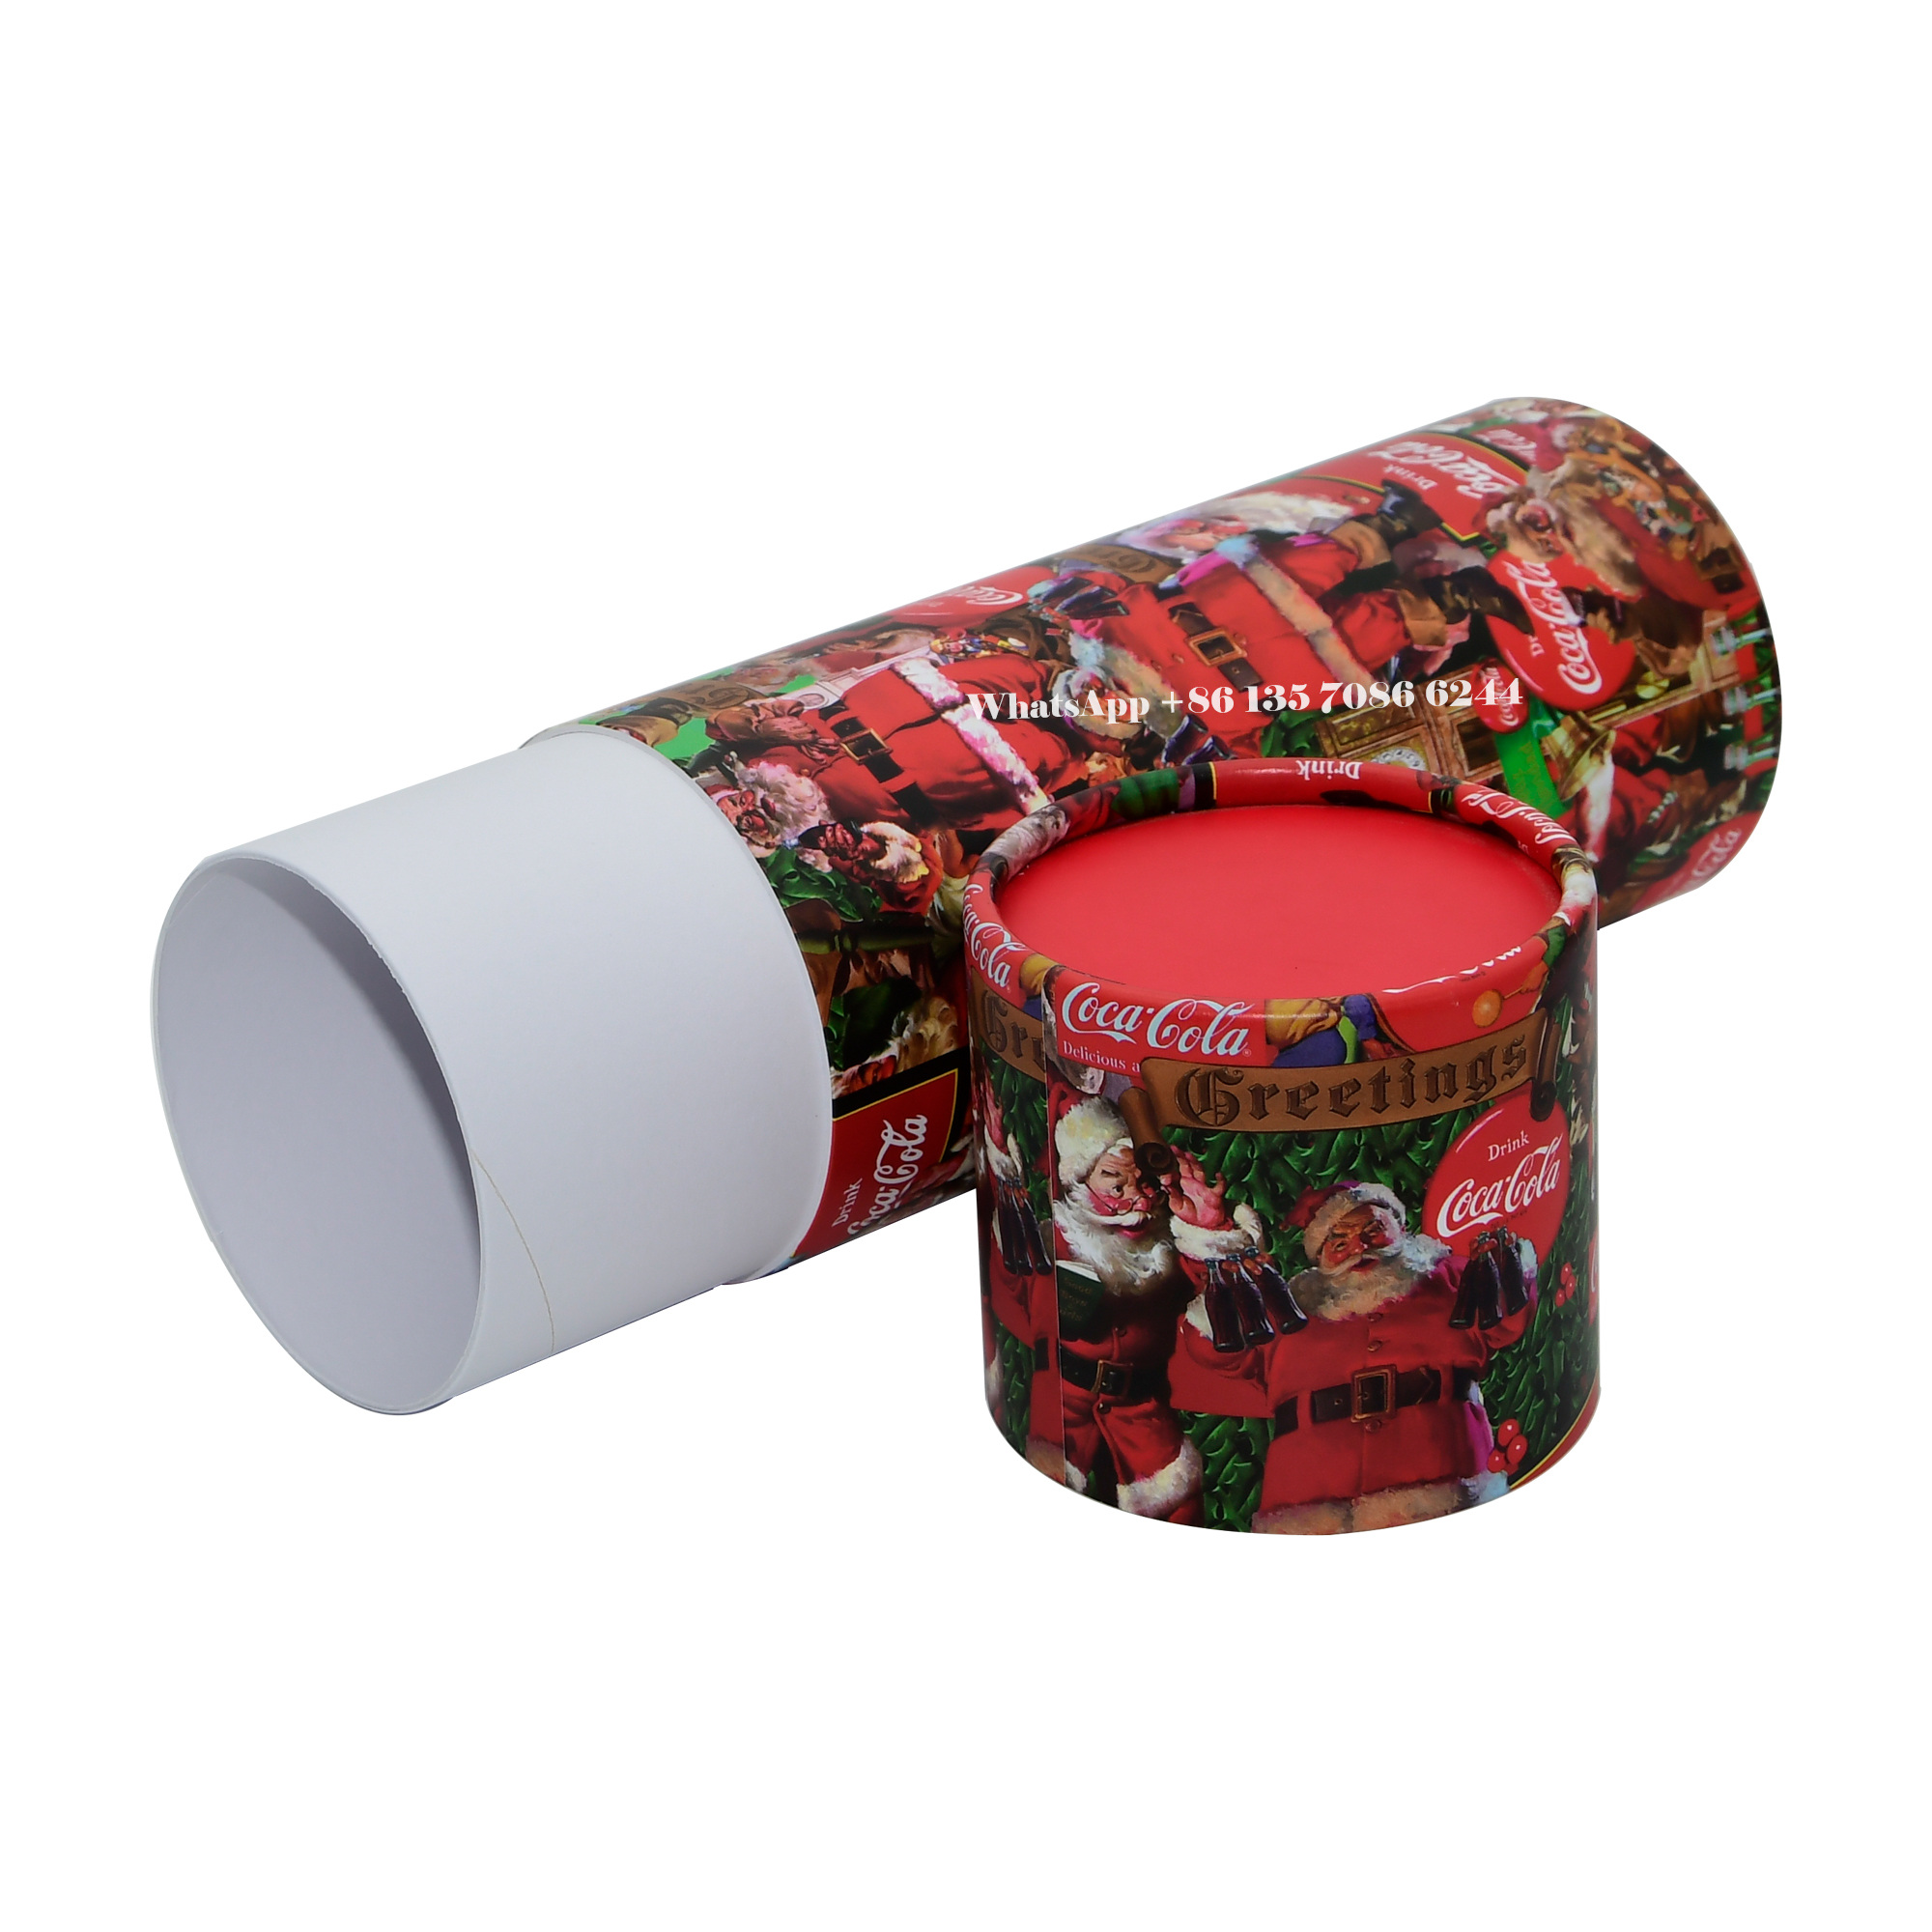 축제적인 크리스마스 에디션 코카콜라 페이퍼 튜브 포장 박스  